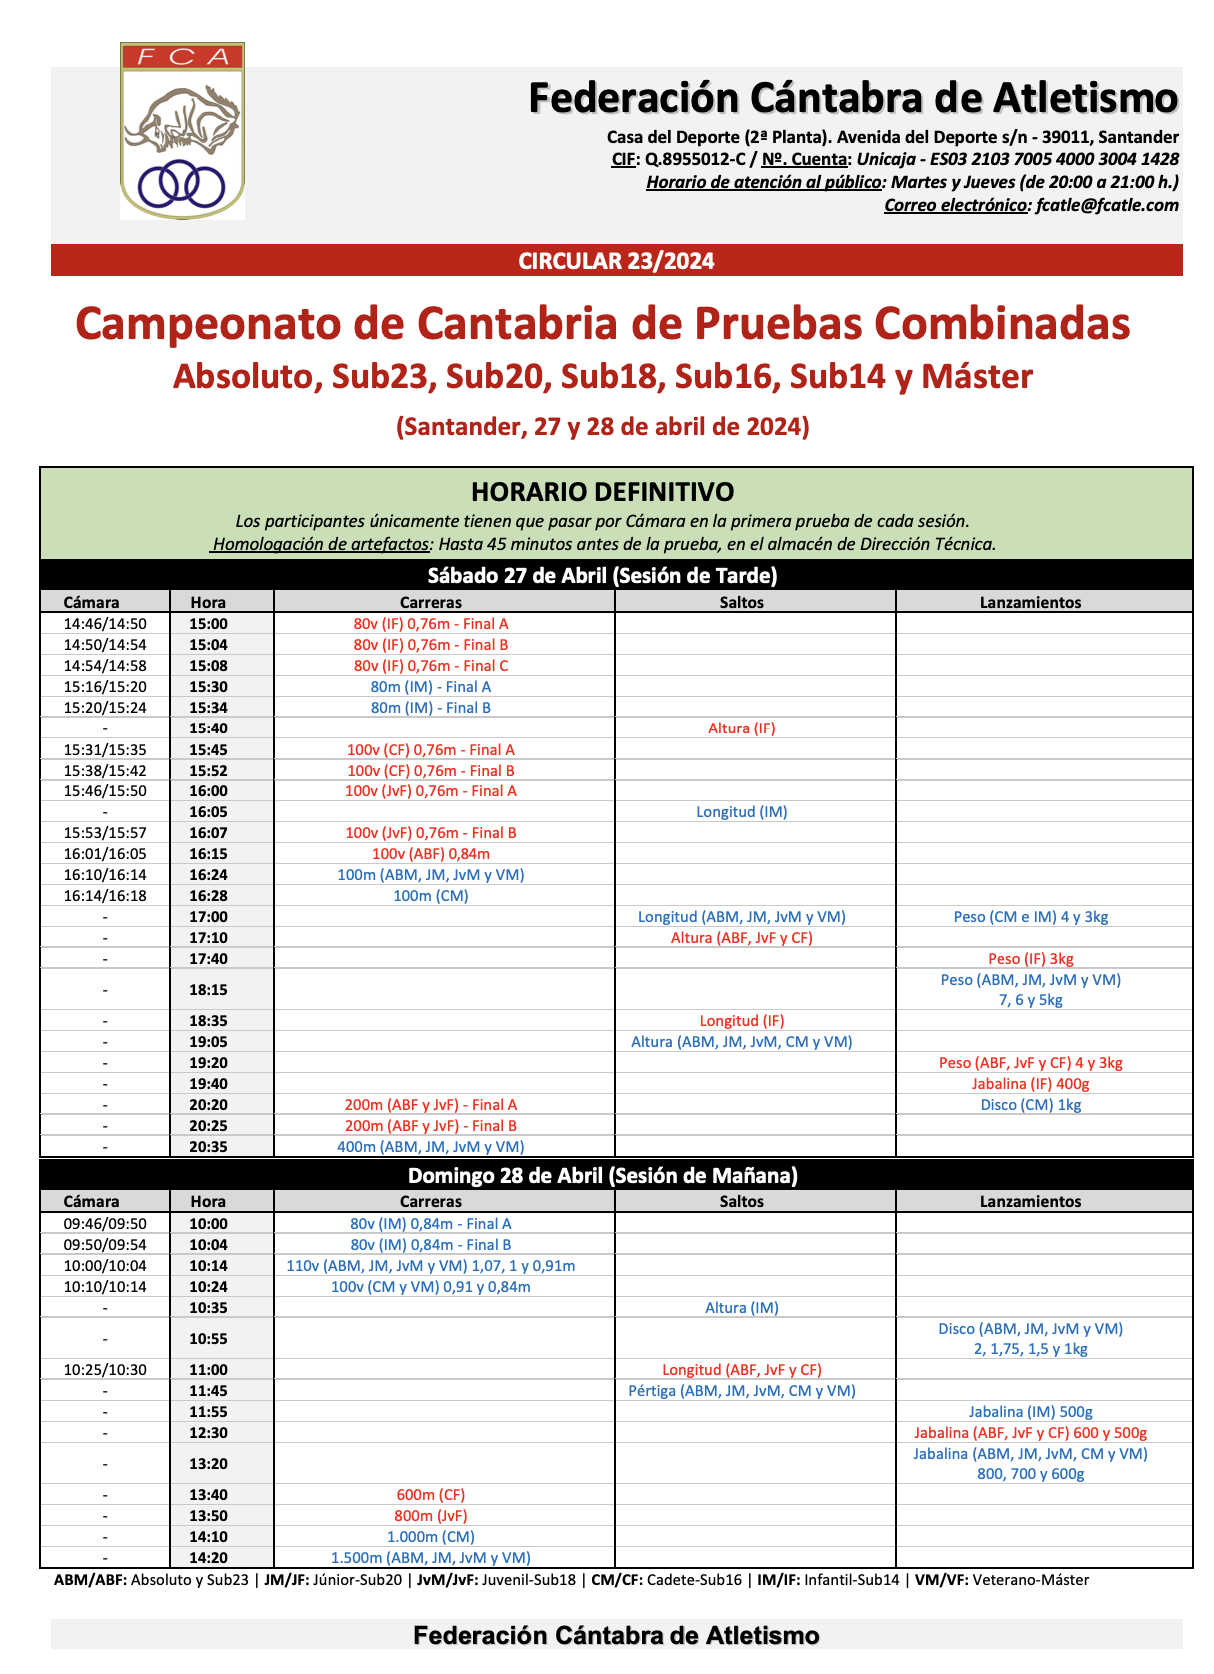 Campeonato de Cantabria de Pruebas Combinadas @ Santander, Cantabria